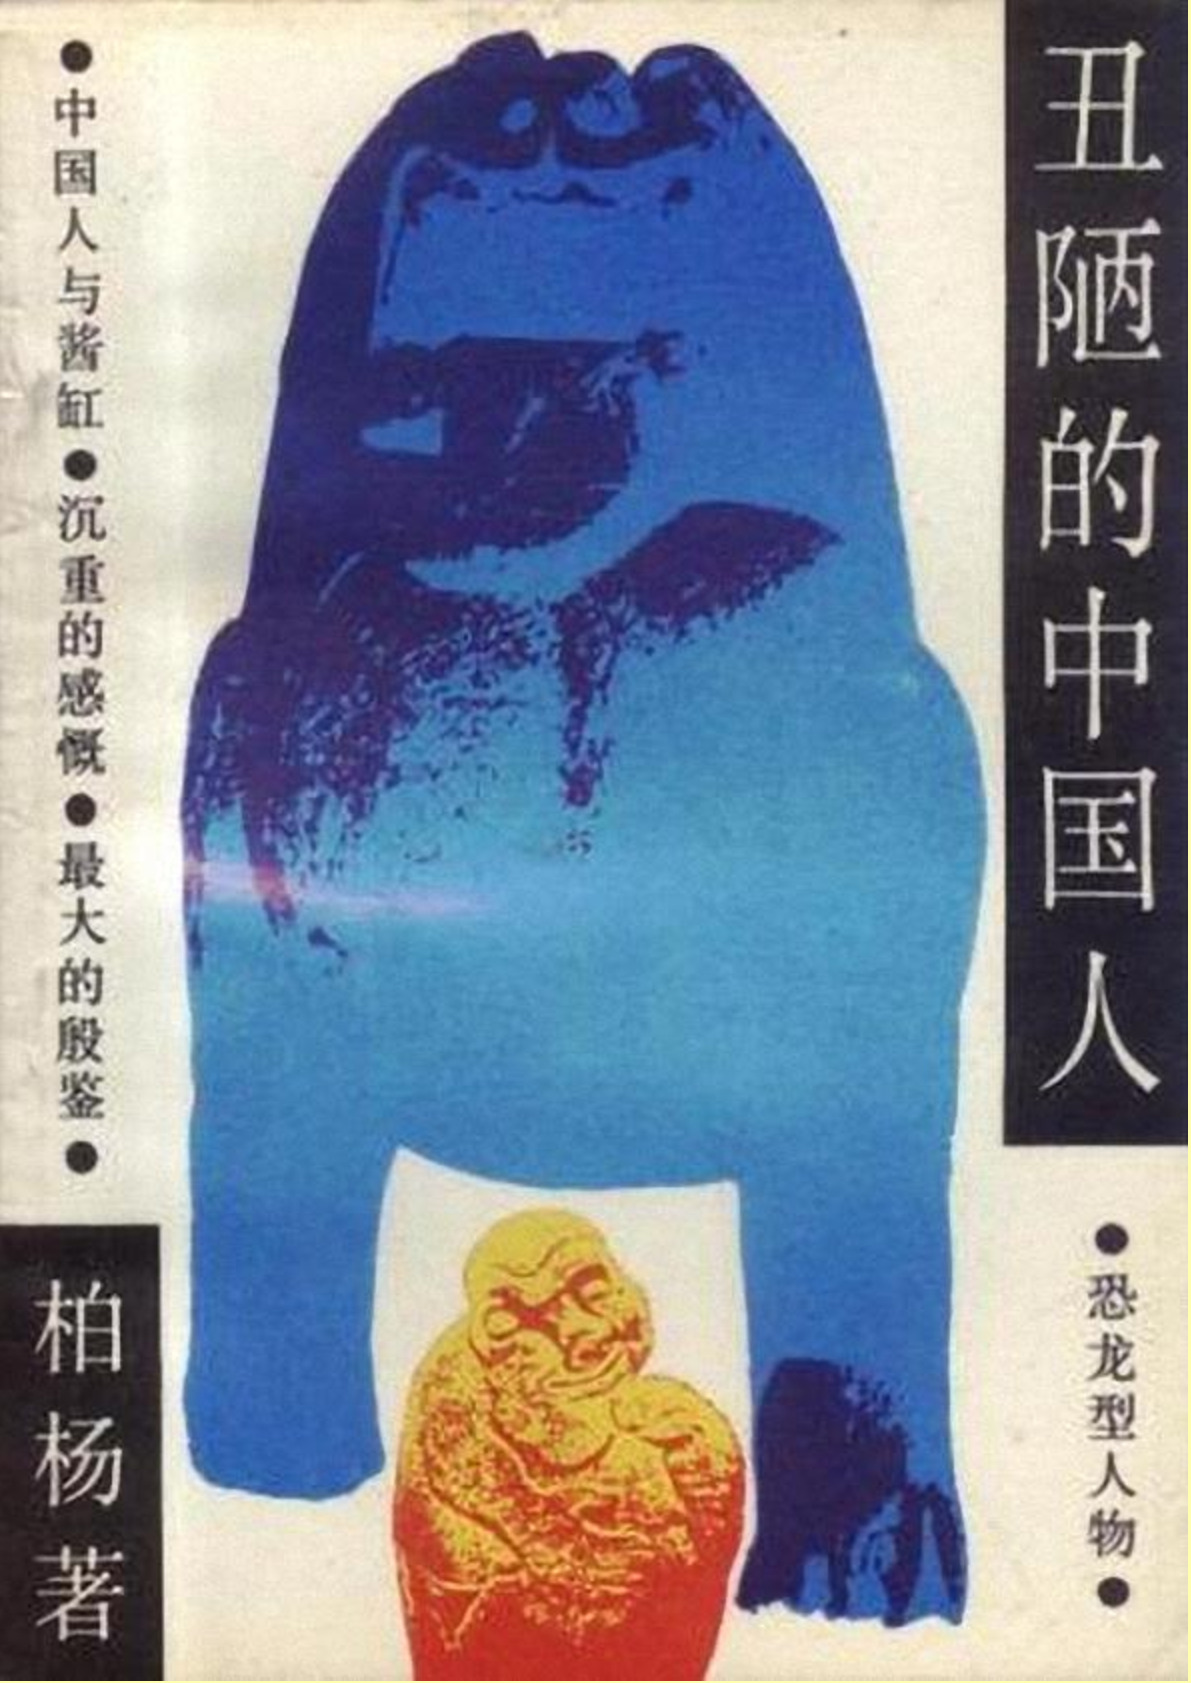 3、丑陋的中国人  湖南文艺出版社 1986-未删节文字版